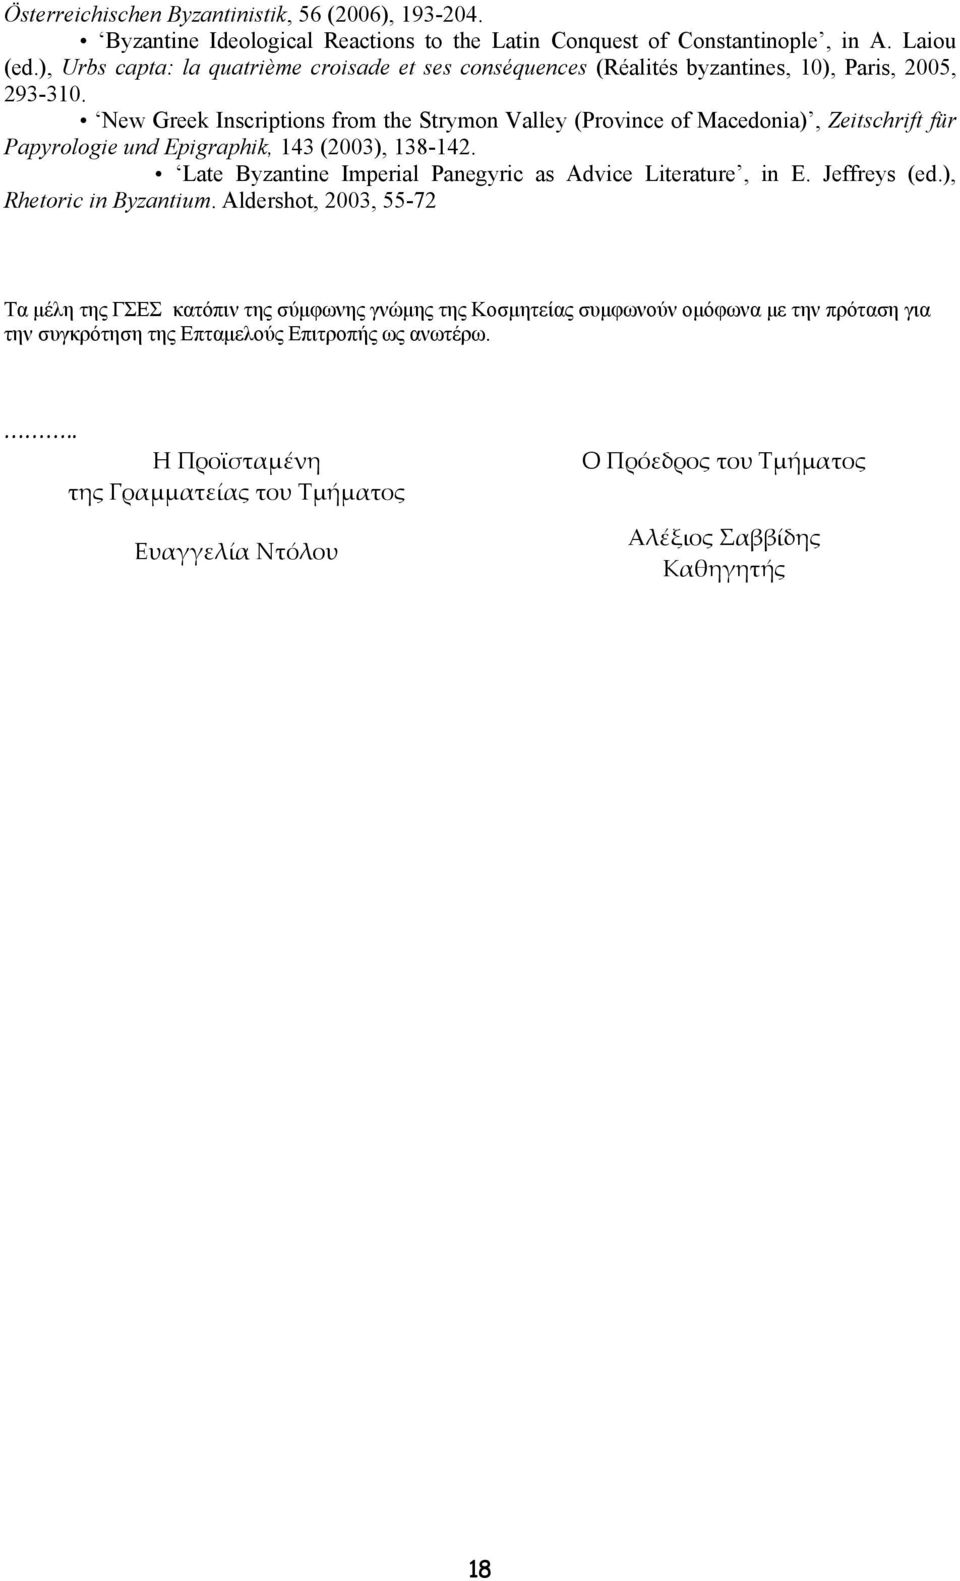 New Greek Inscriptions from the Strymon Valley (Province of Macedonia), Zeitschrift für Papyrologie und Epigraphik, 143 (2003), 138-142.